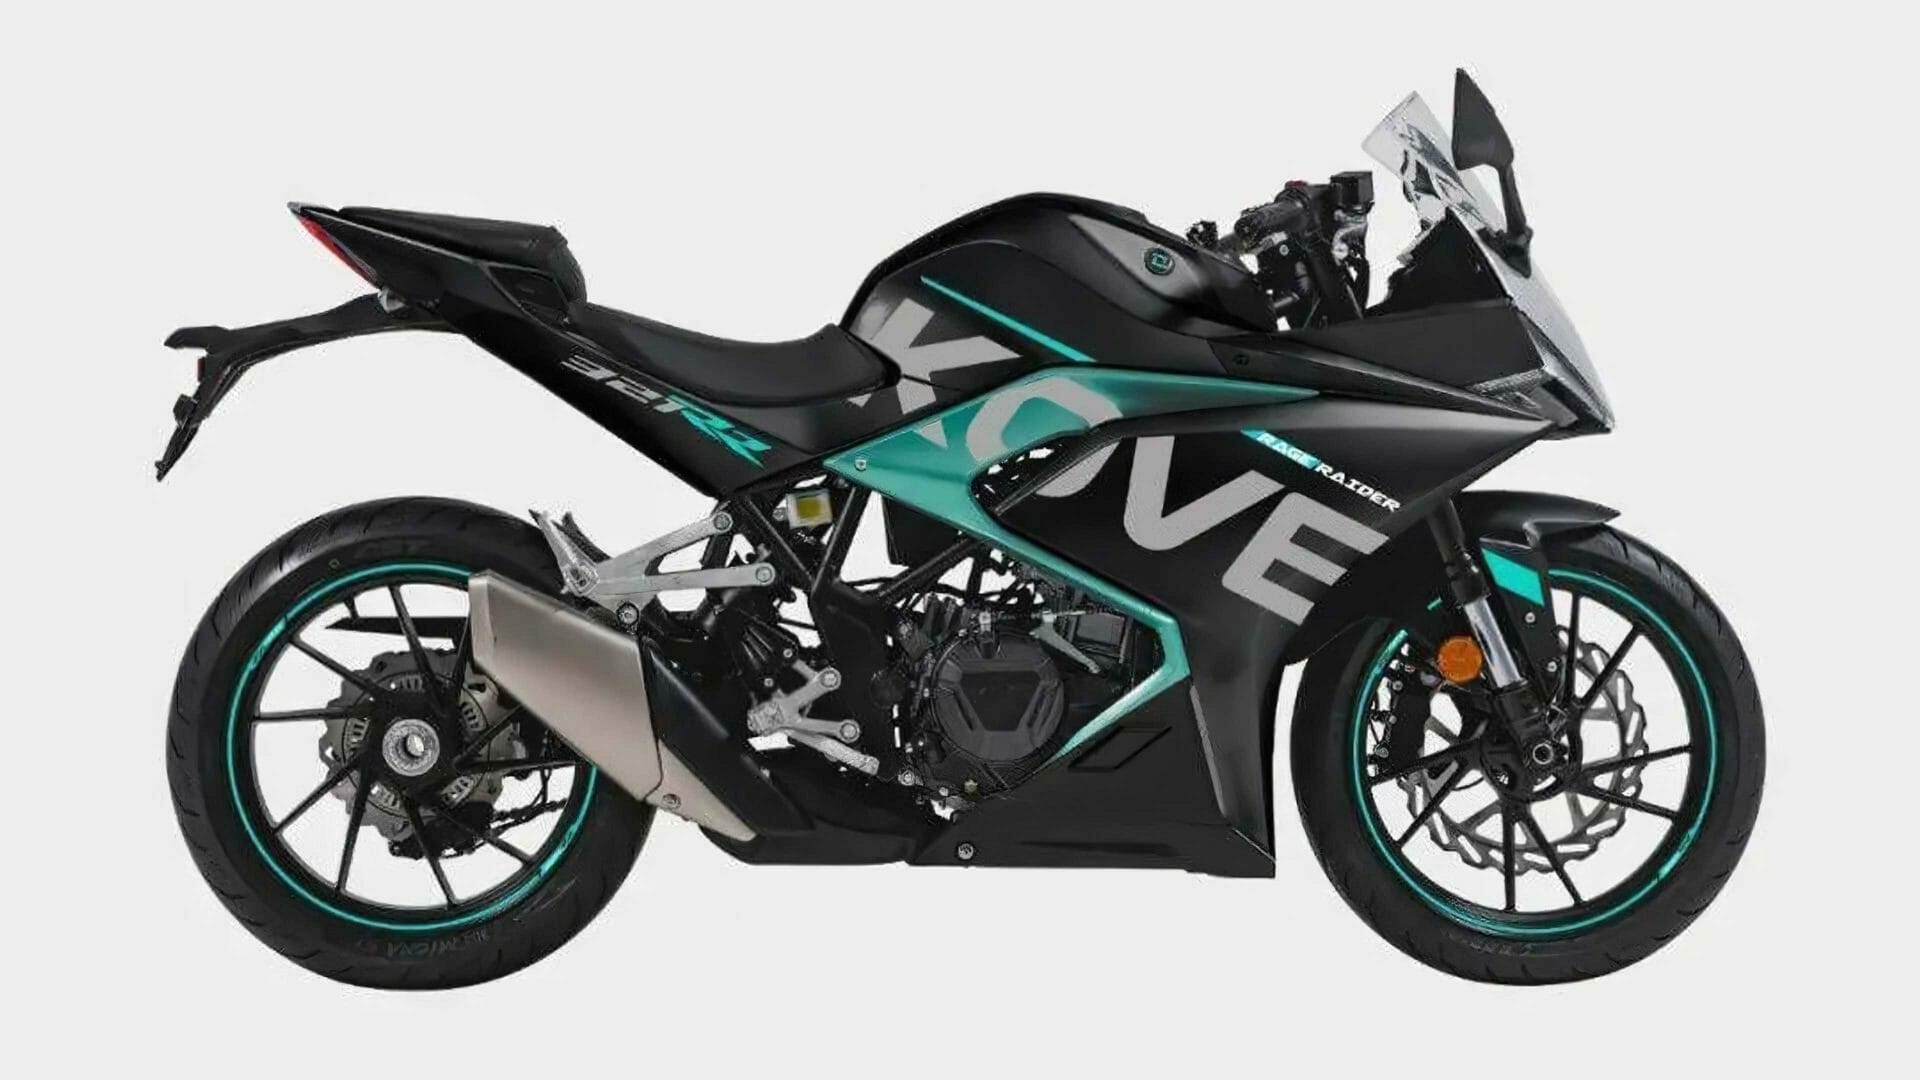 Kove möchte weltweit anbieten - MOTORCYCLES.NEWS